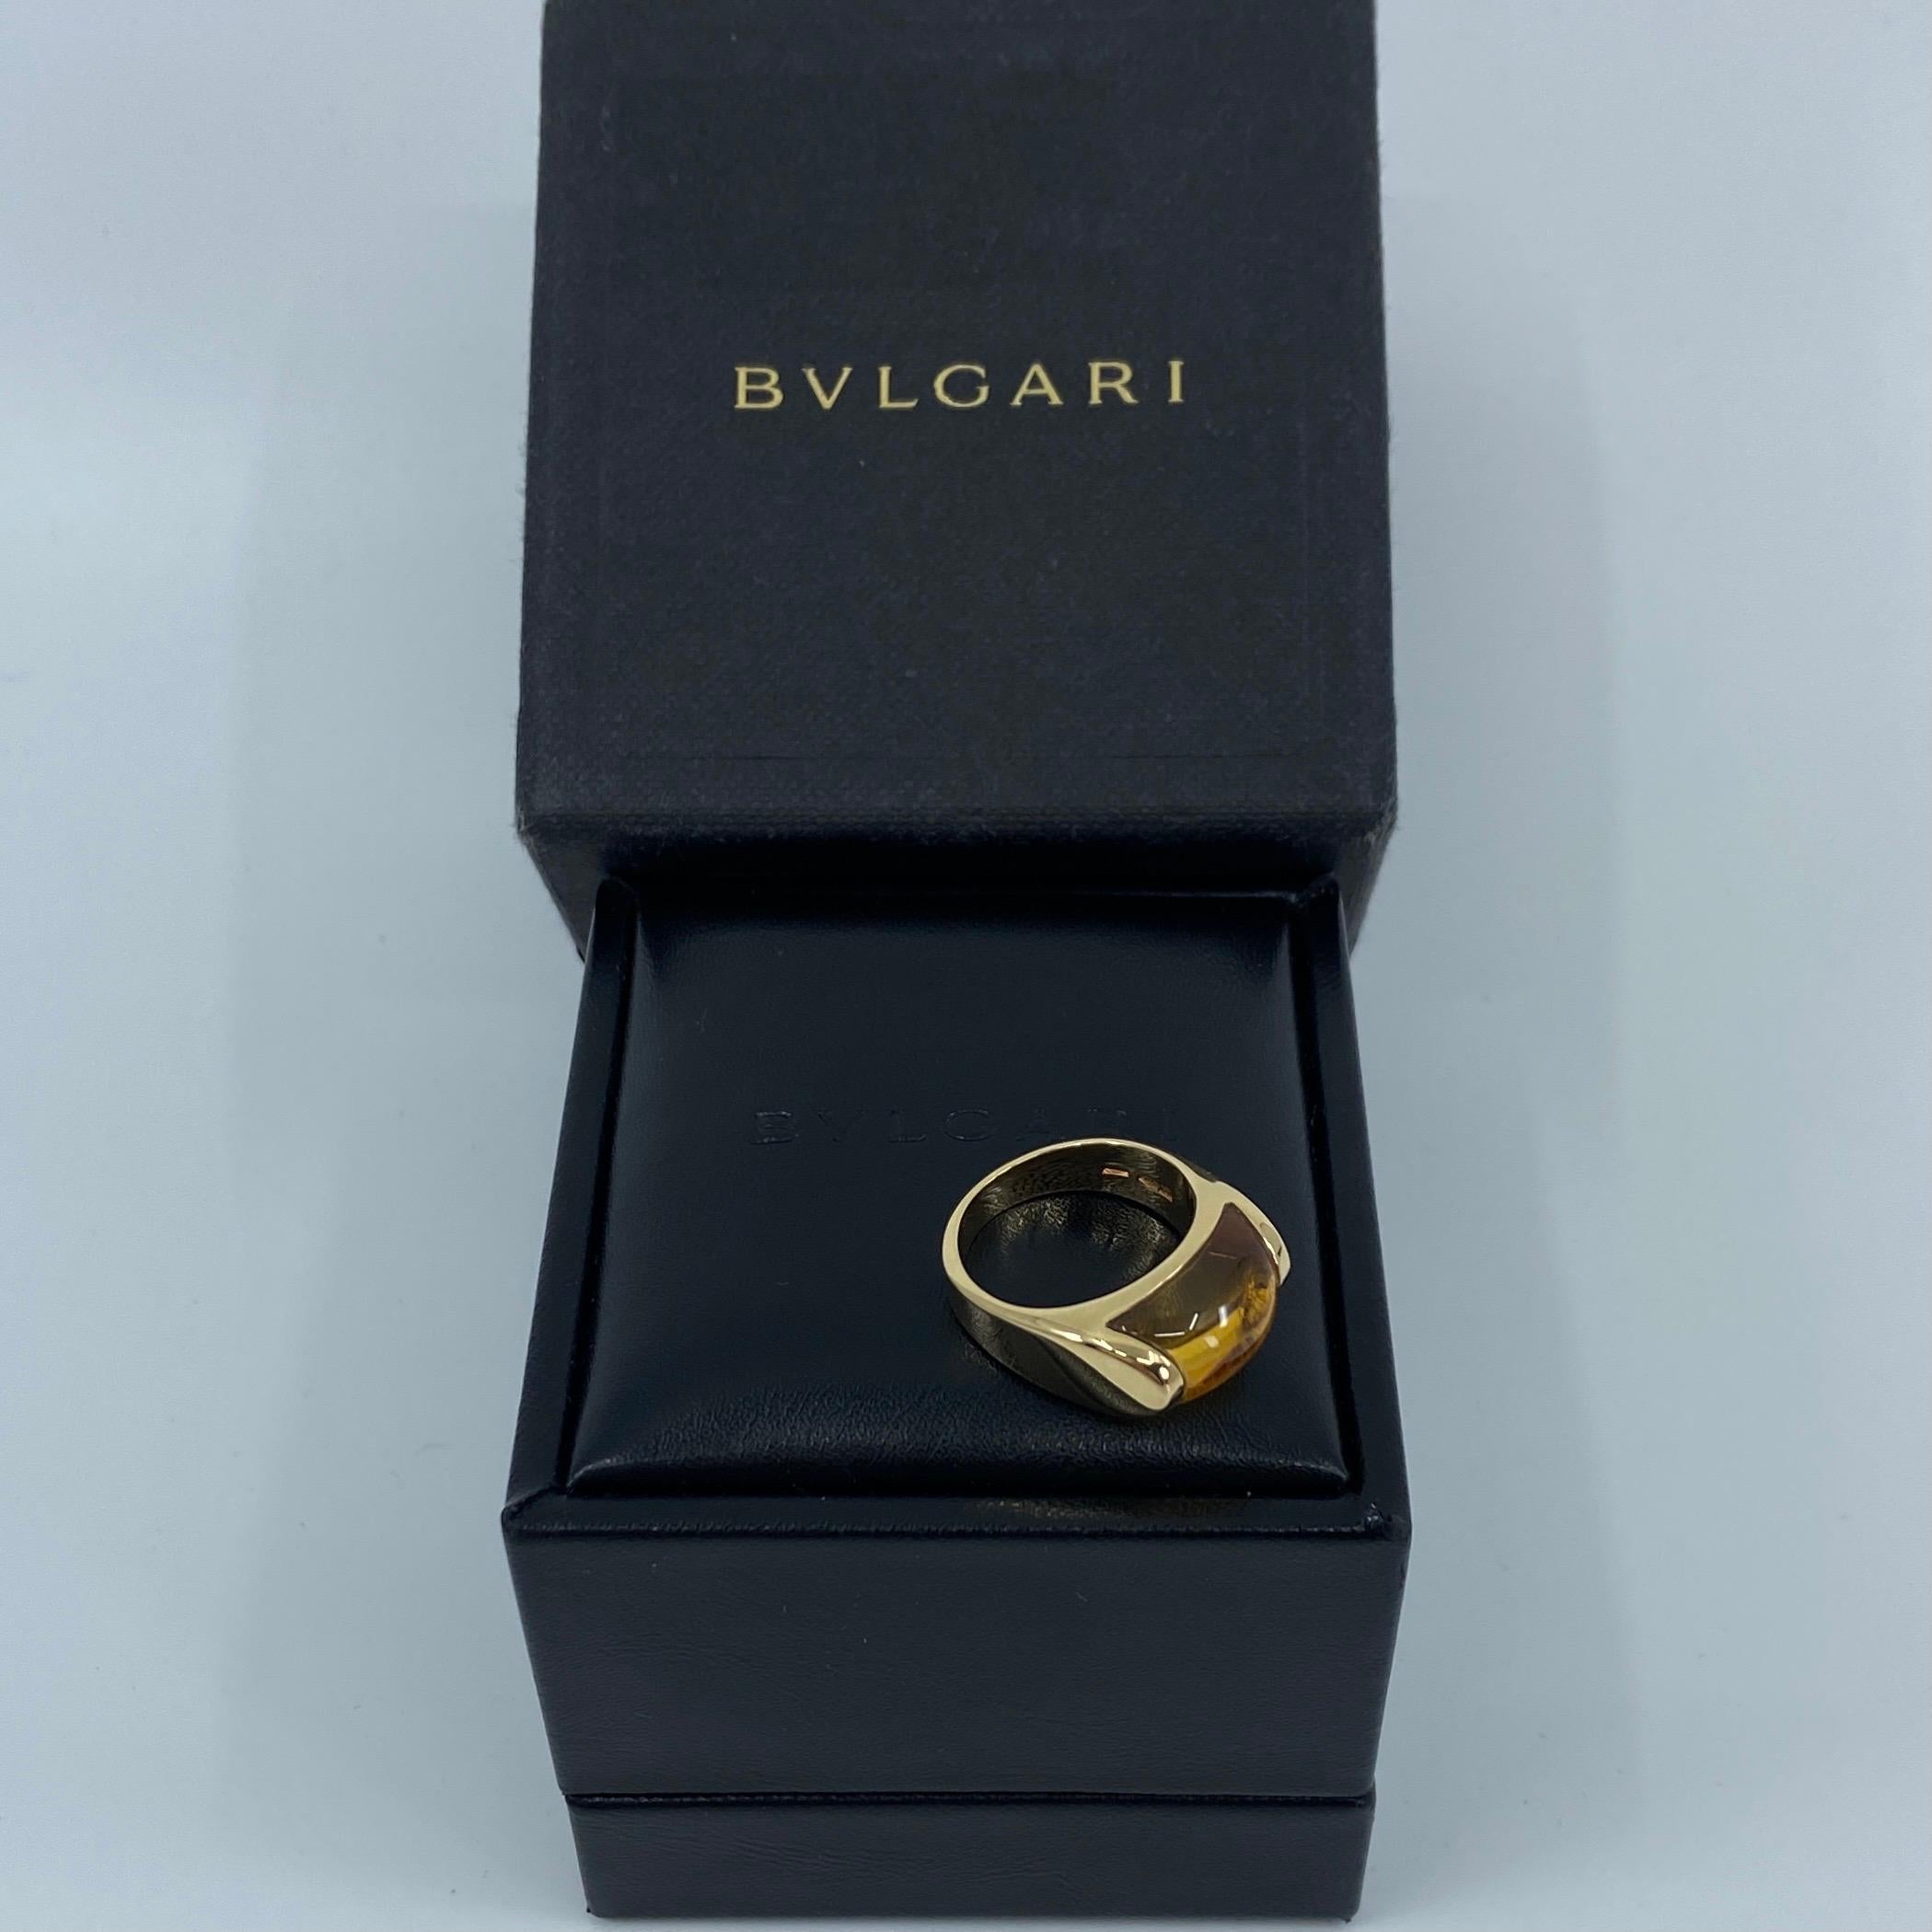 Bvlgari Bulgari Tronchetto 18 Karat Yellow Gold Orange Citrine Ring with Box 3